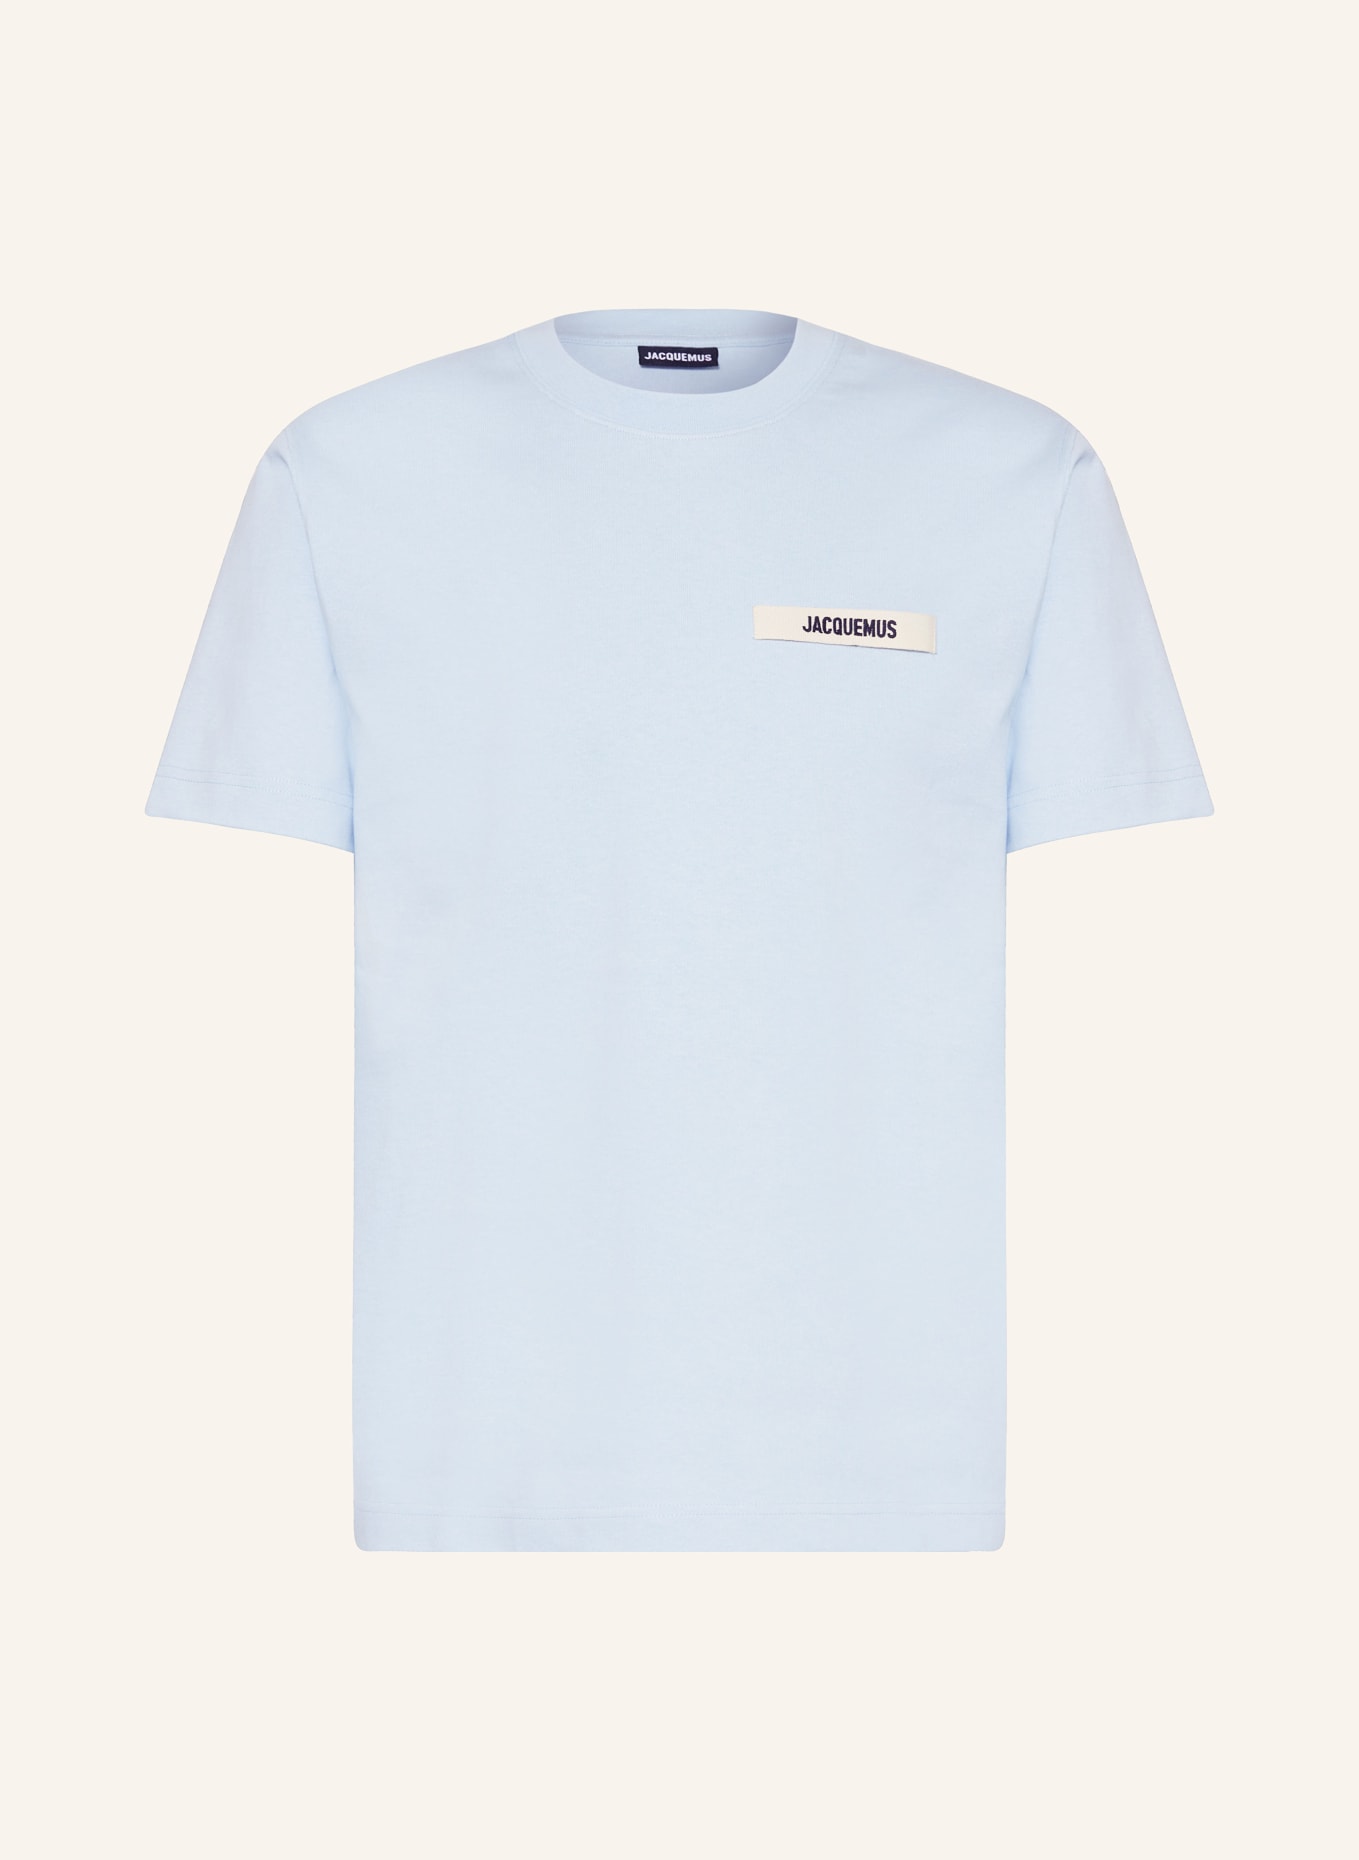 JACQUEMUS T-shirt LE TSHIRT GROS GRAIN, Color: LIGHT BLUE (Image 1)